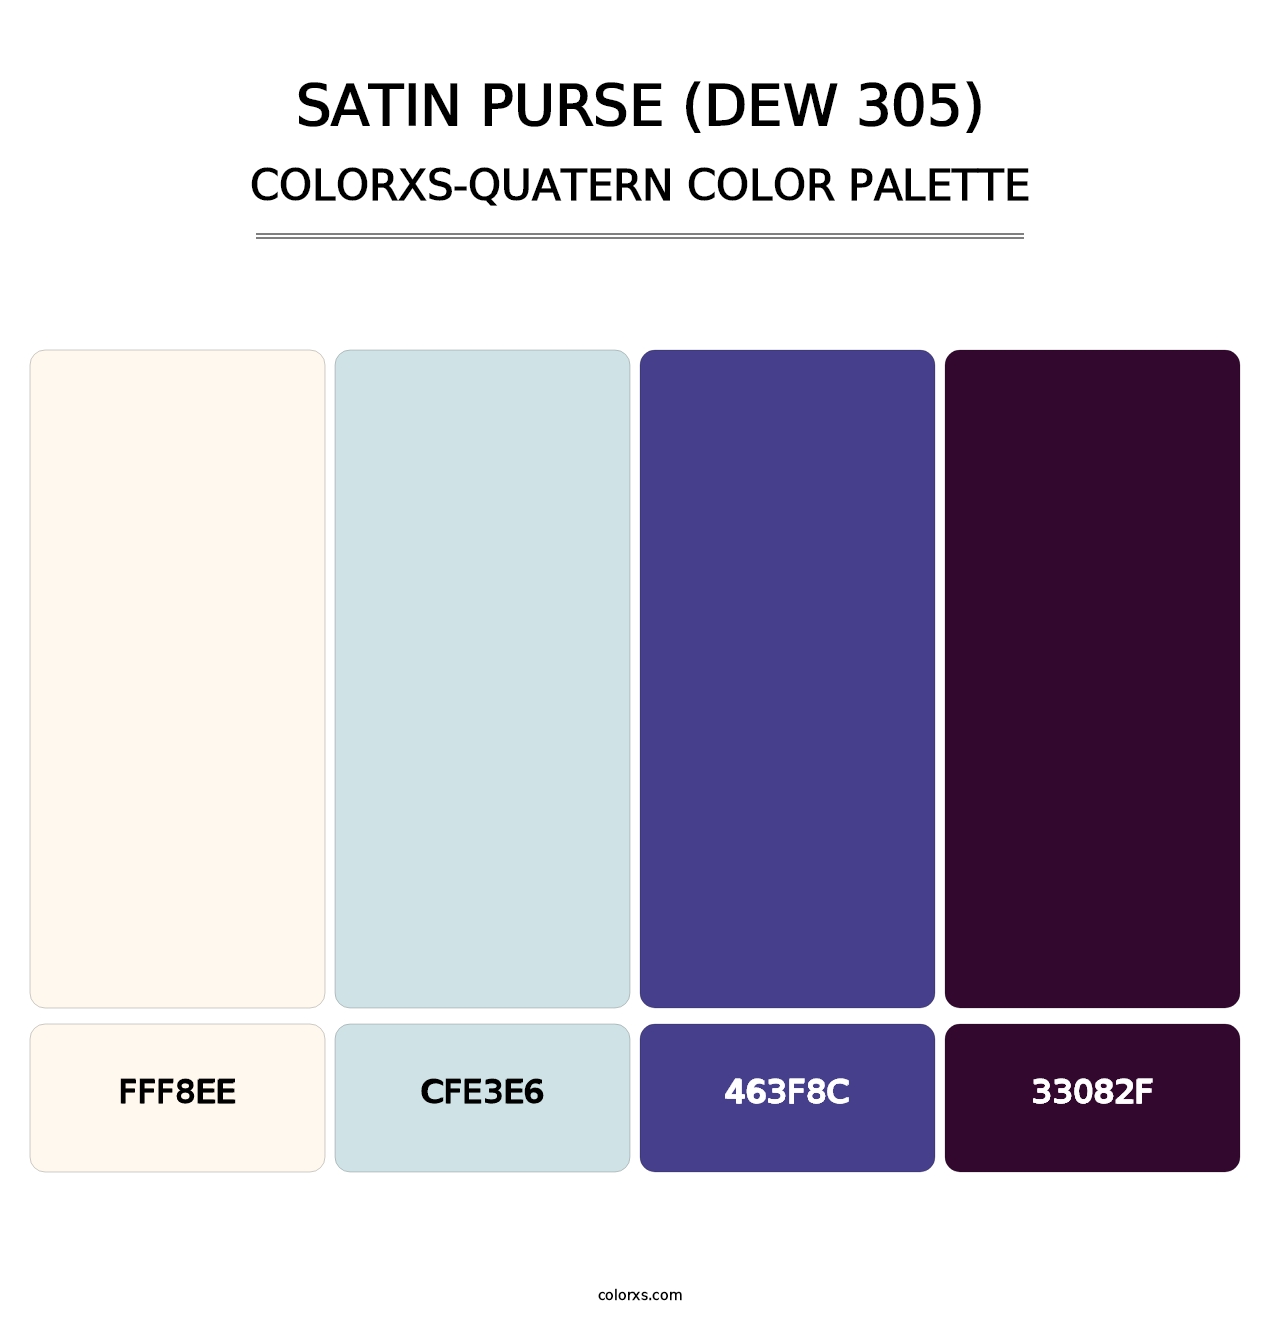 Satin Purse (DEW 305) - Colorxs Quatern Palette